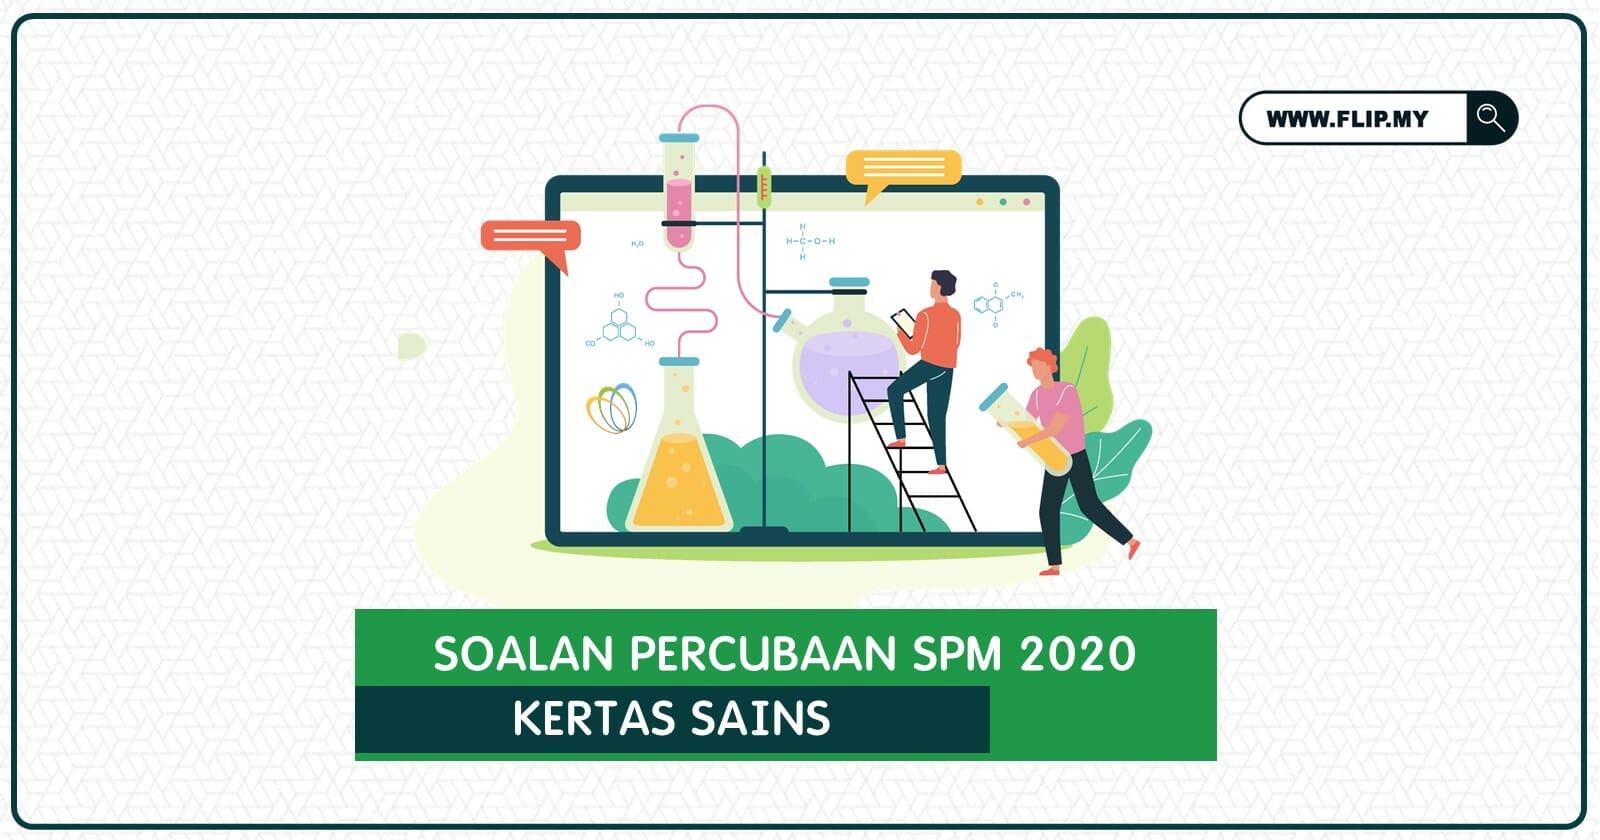 Soalan Percubaan Spm Sains 2020 Negeri Kelantan Flip My